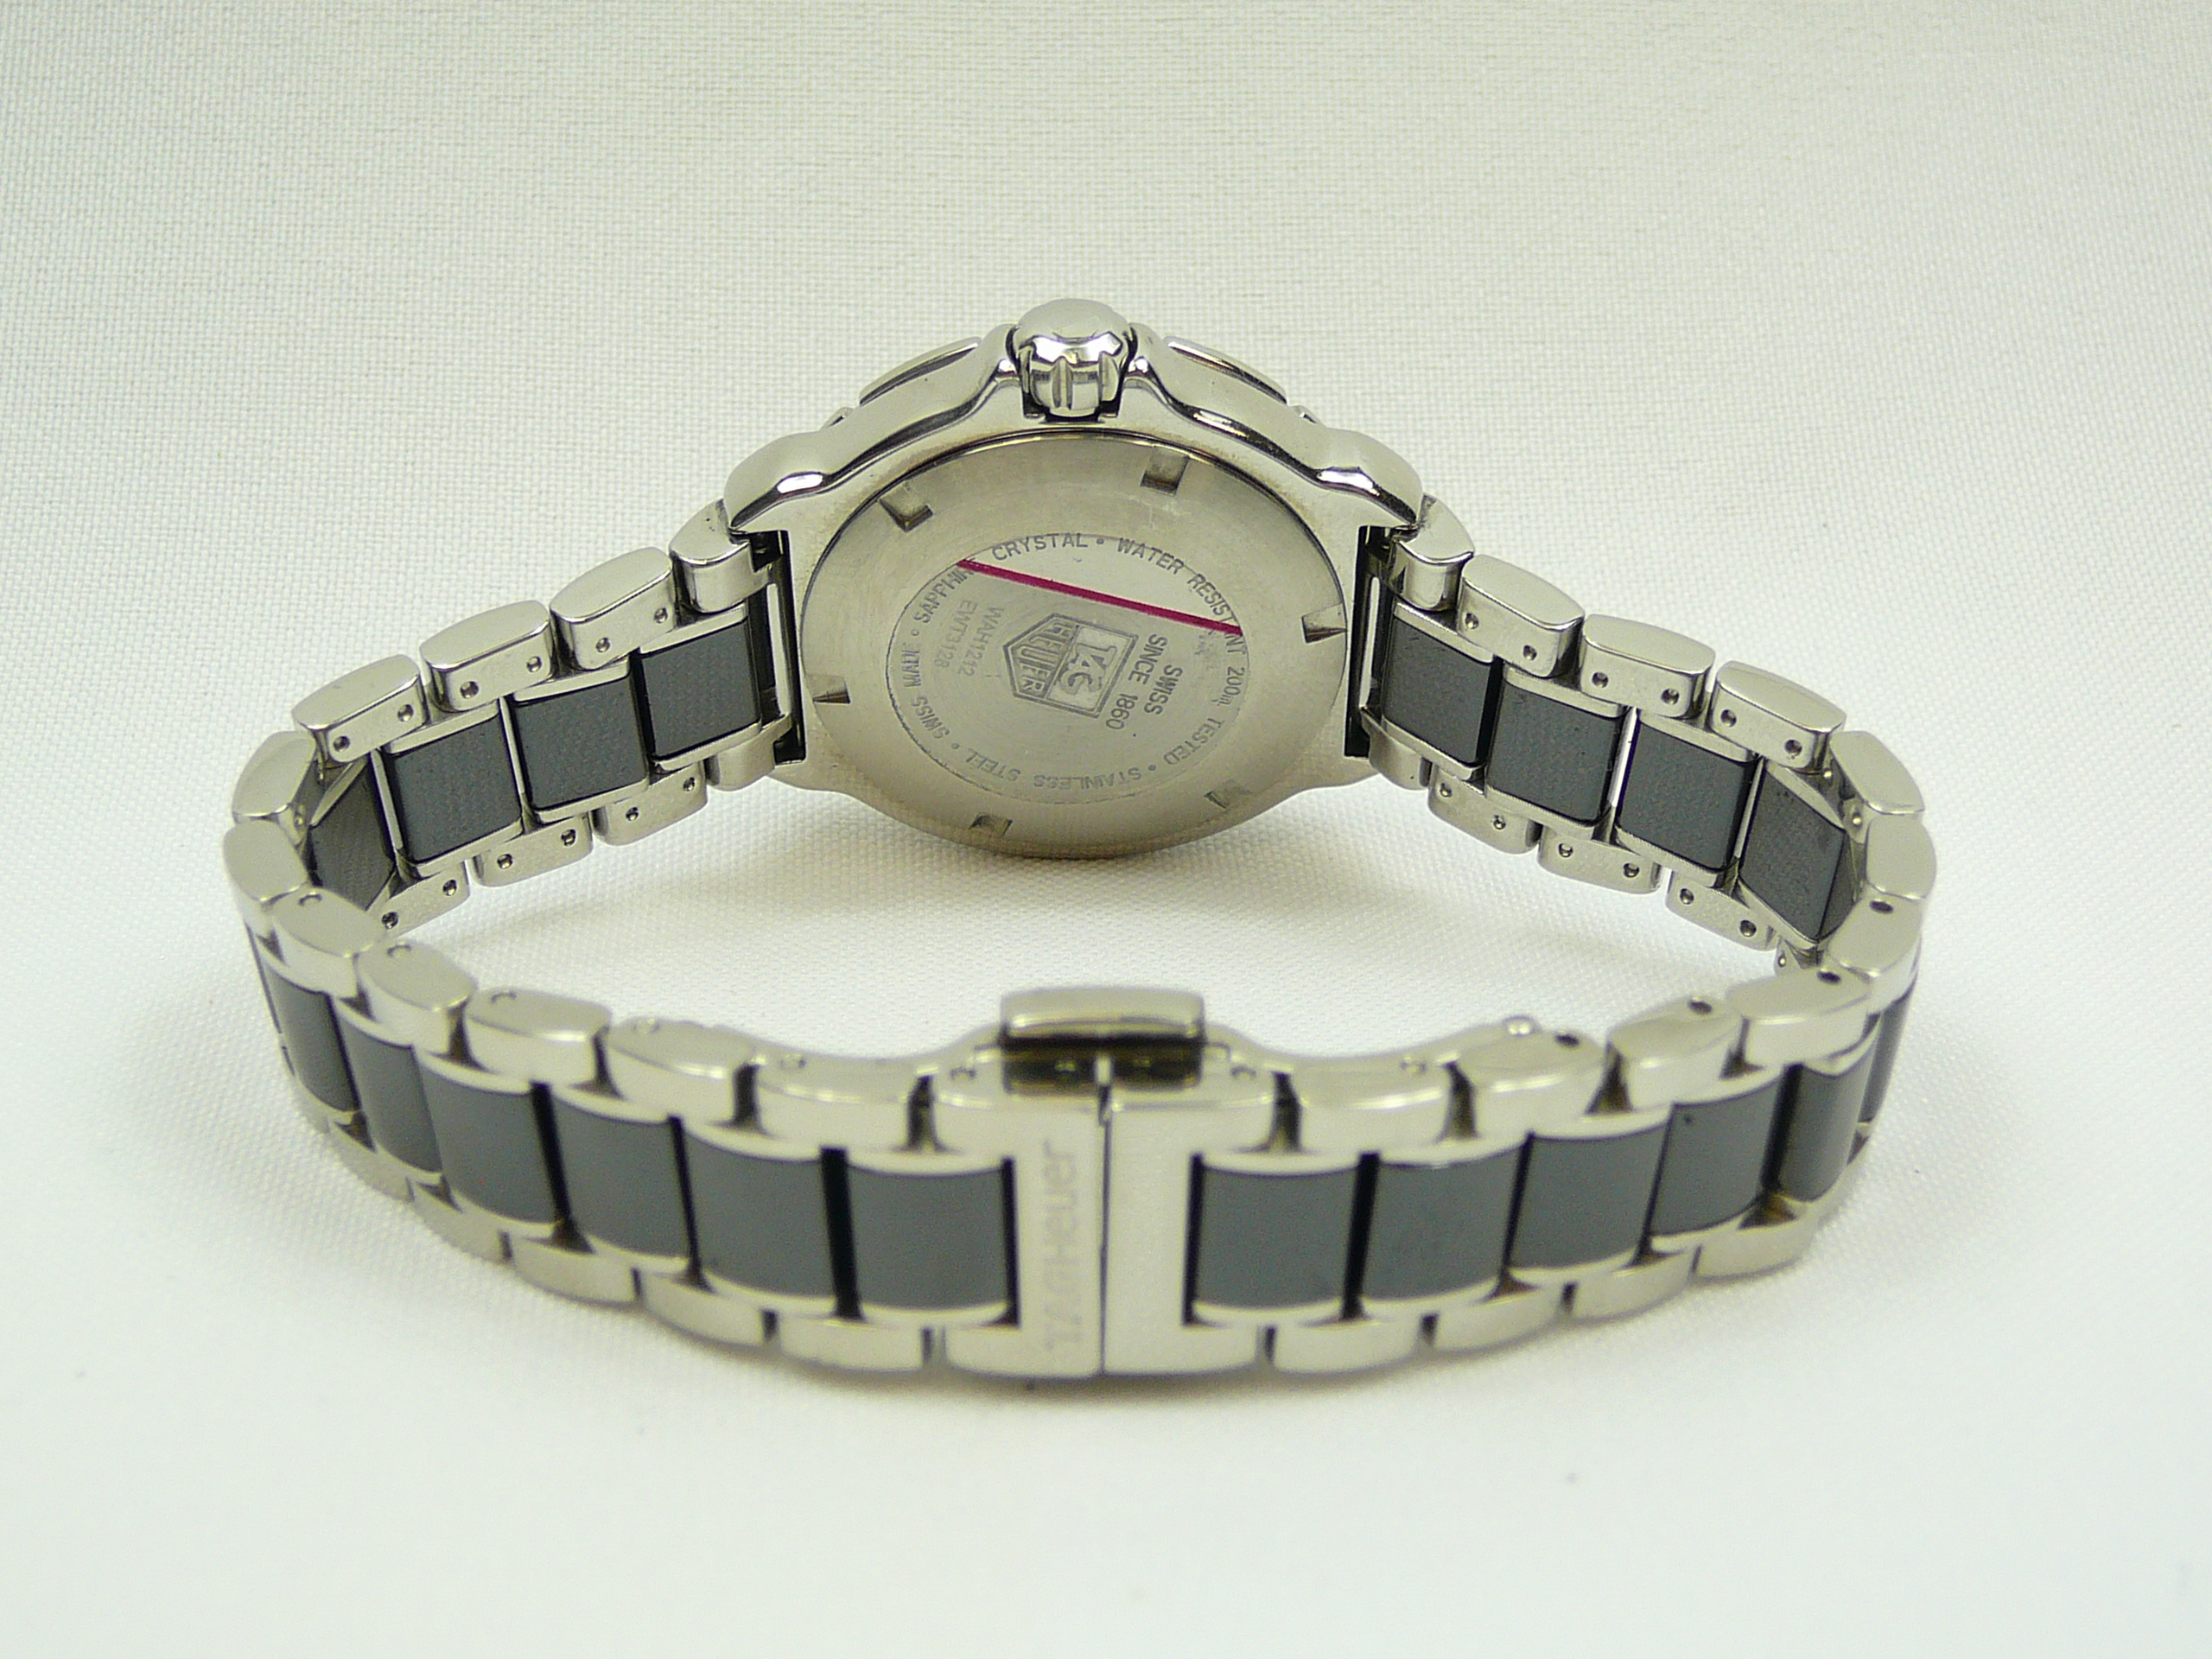 Ladies Tag Heuer Wrist Watch - Image 3 of 3